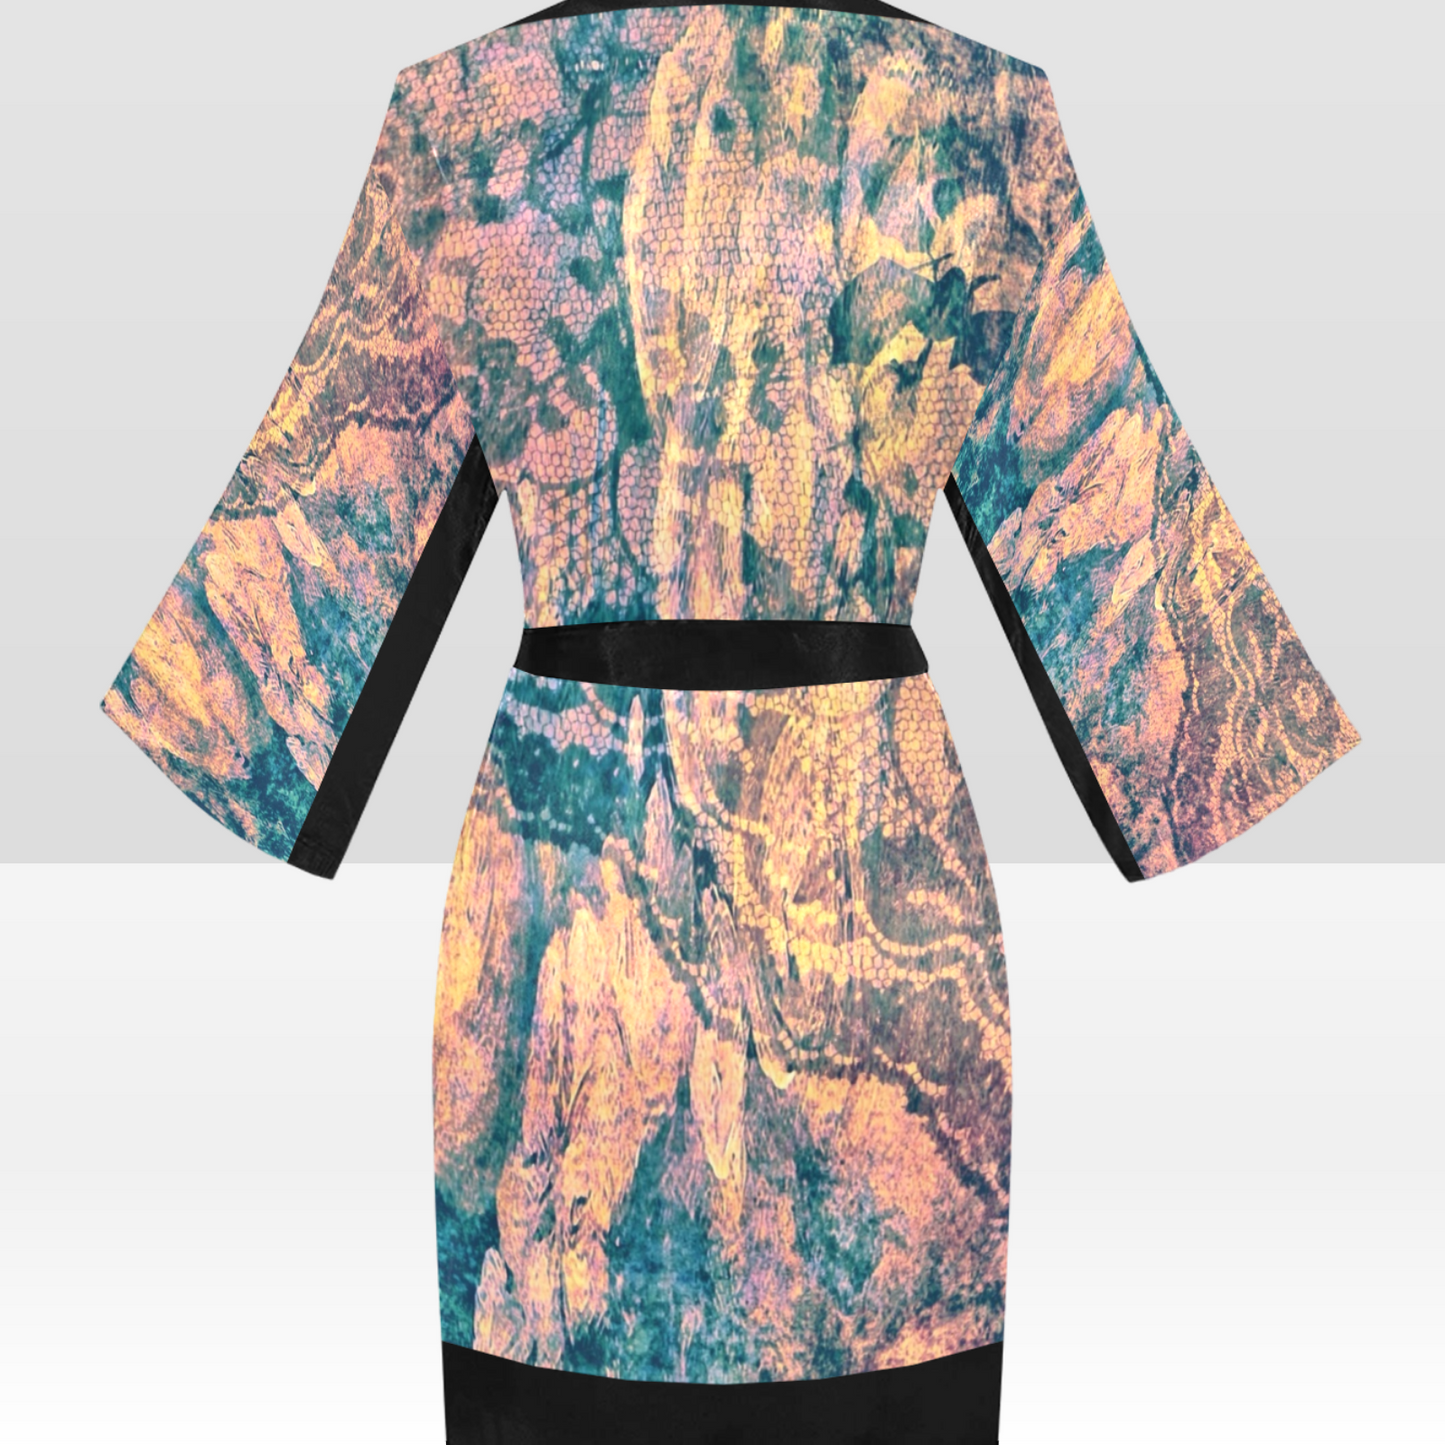 Vintage Floral Kimono Robe, Black or White Trim, Sizes XS to 2XL, Design 17xx